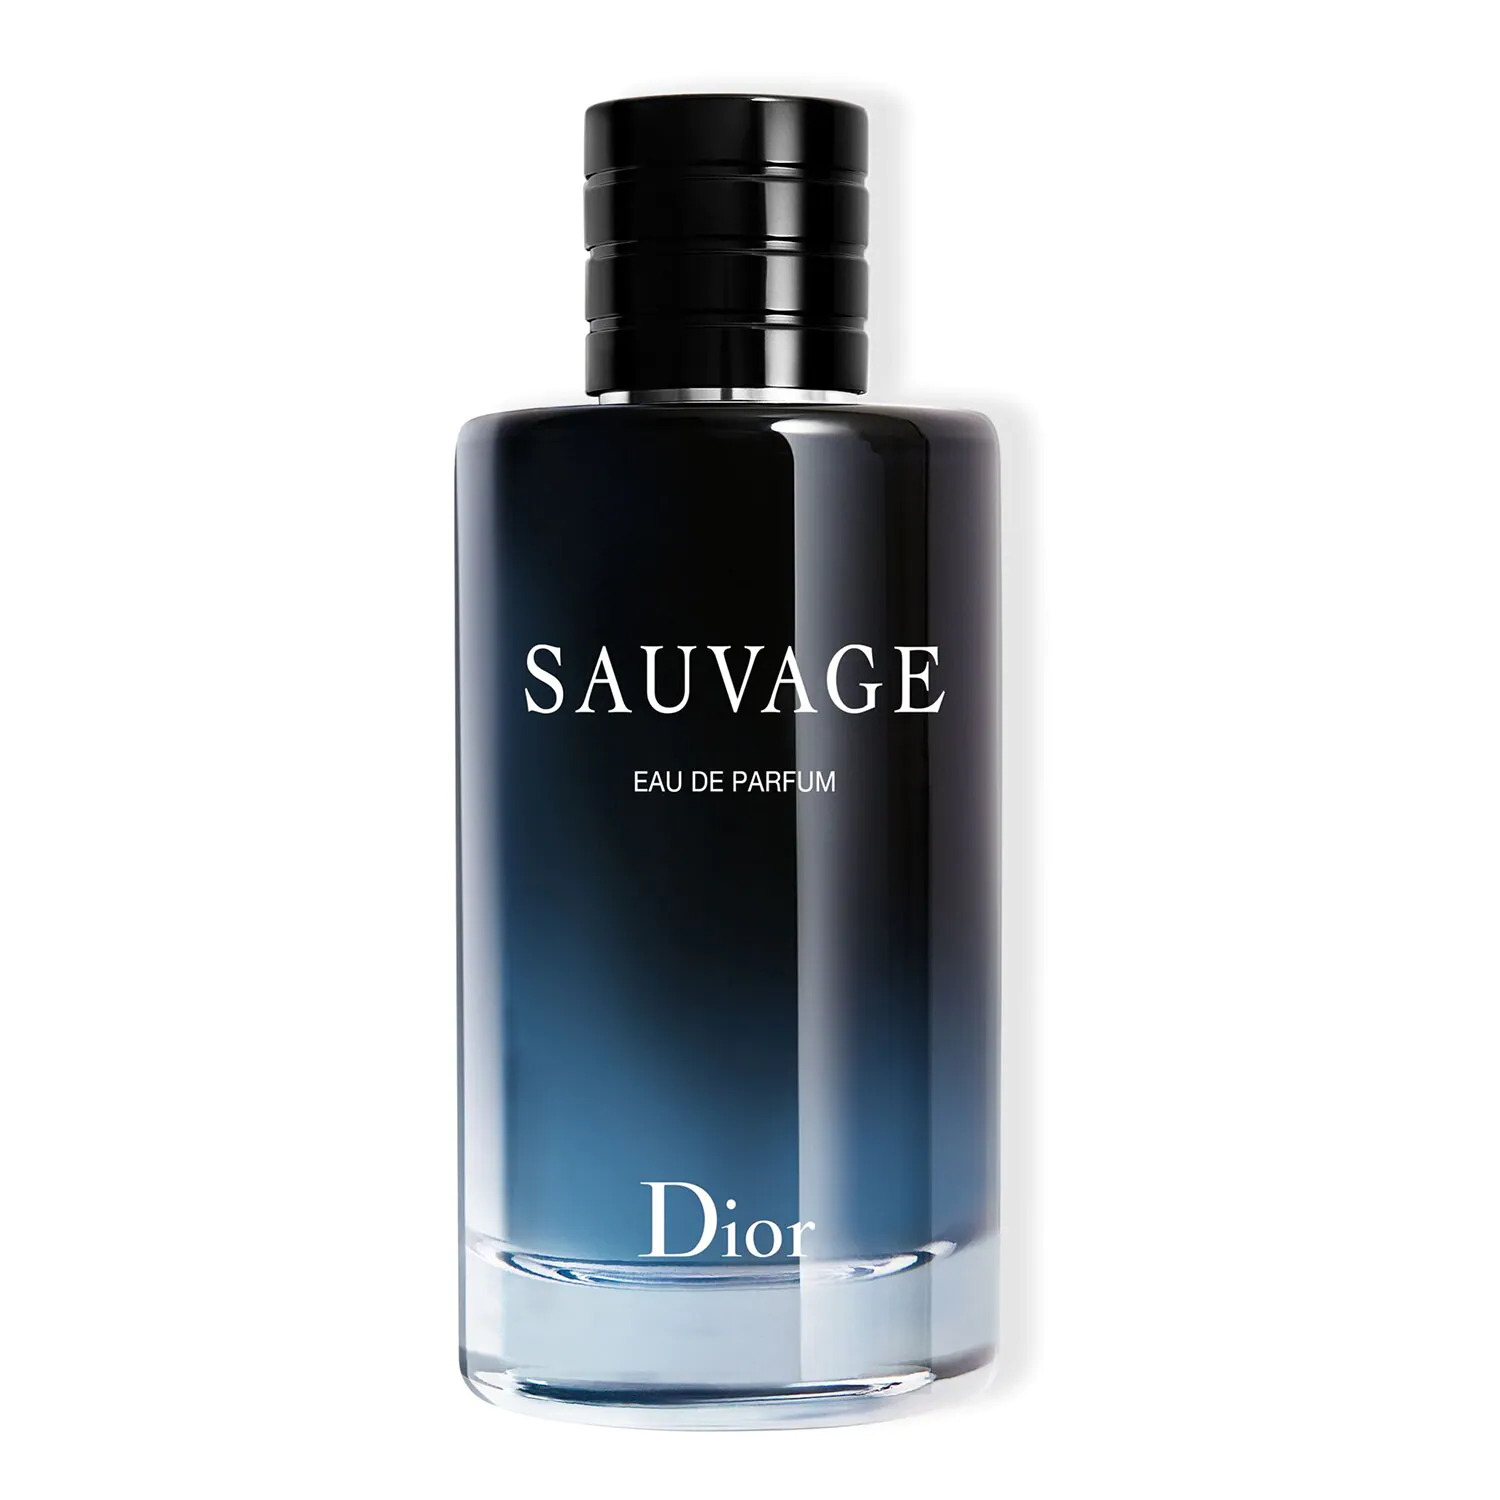 ادکلن مردانه دیور ساواج مدل Sauvage eau de parfum from Dior - ارسال 10 الی 15 روز کاری